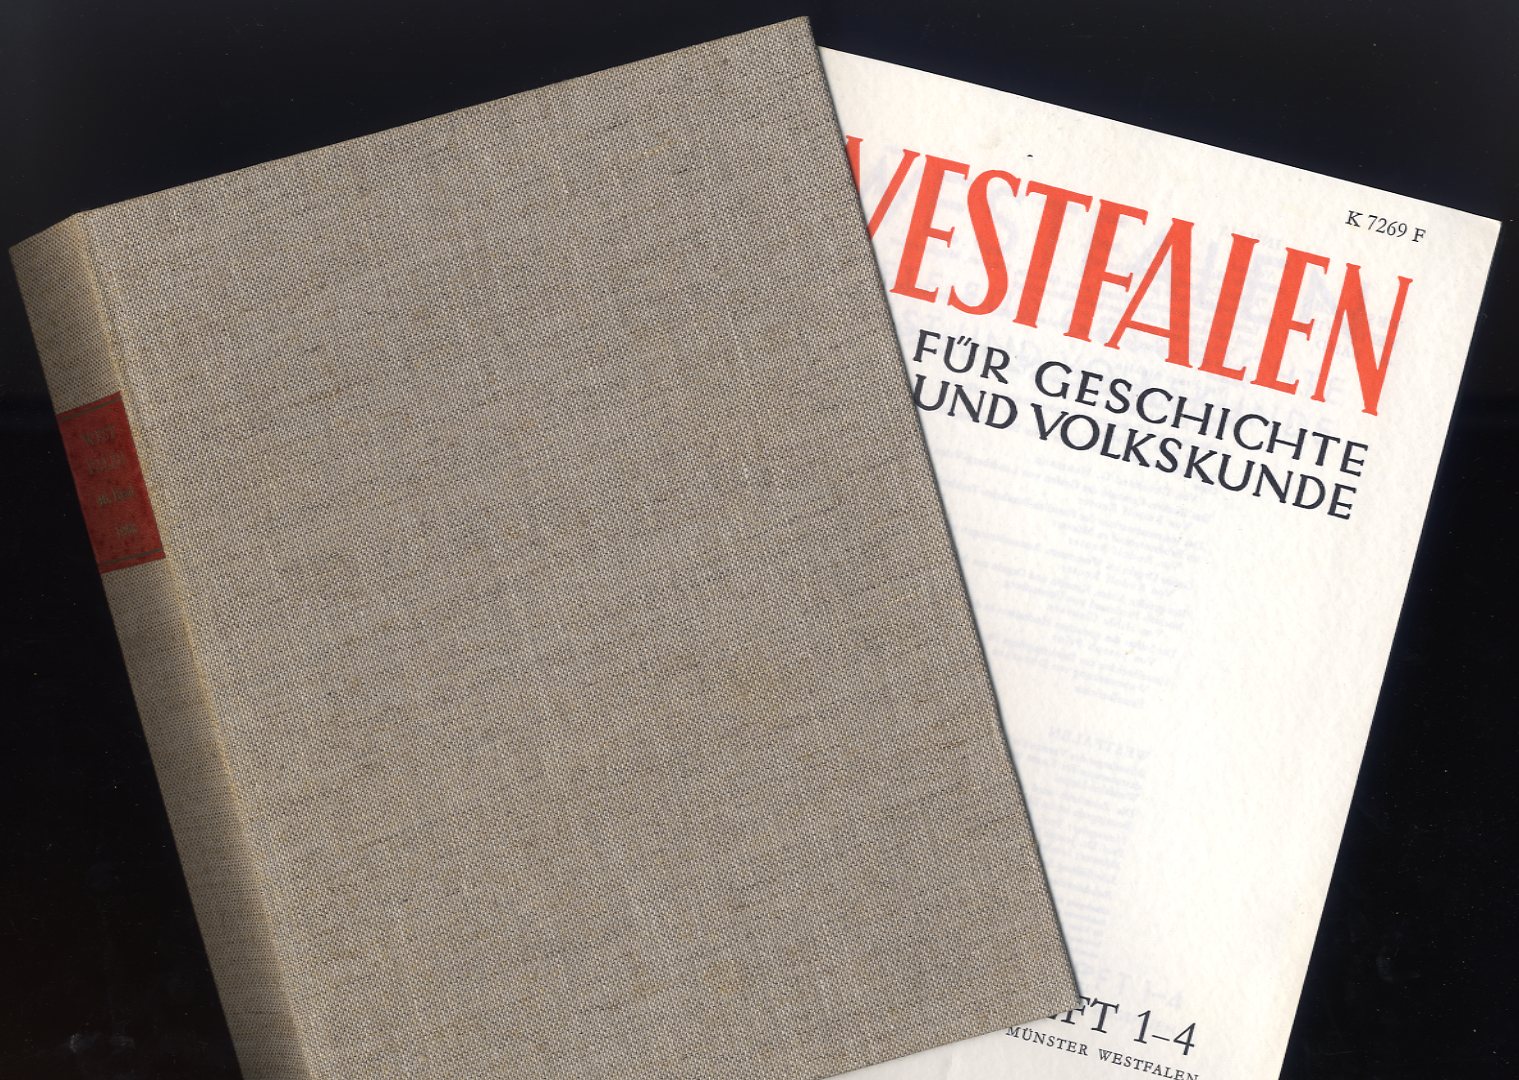   Westfalen. Hefte für Geschichte, Kunst und Volkskunde 46. 1968. (Hefte 1-4) 